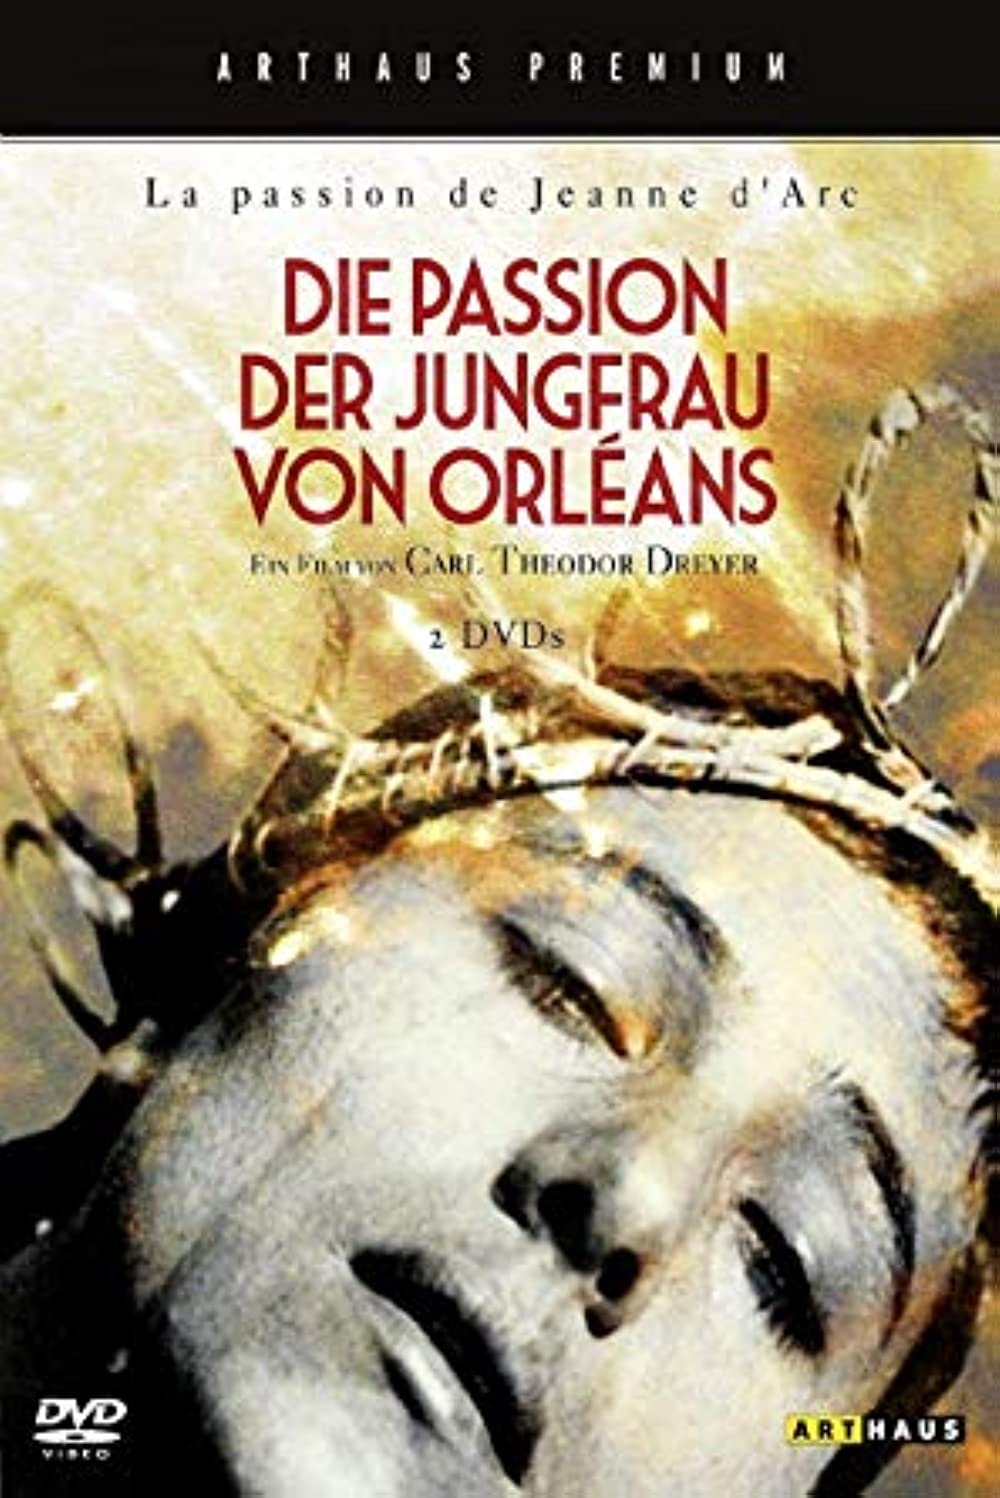 Die Passion der Jungfrau von Orleans